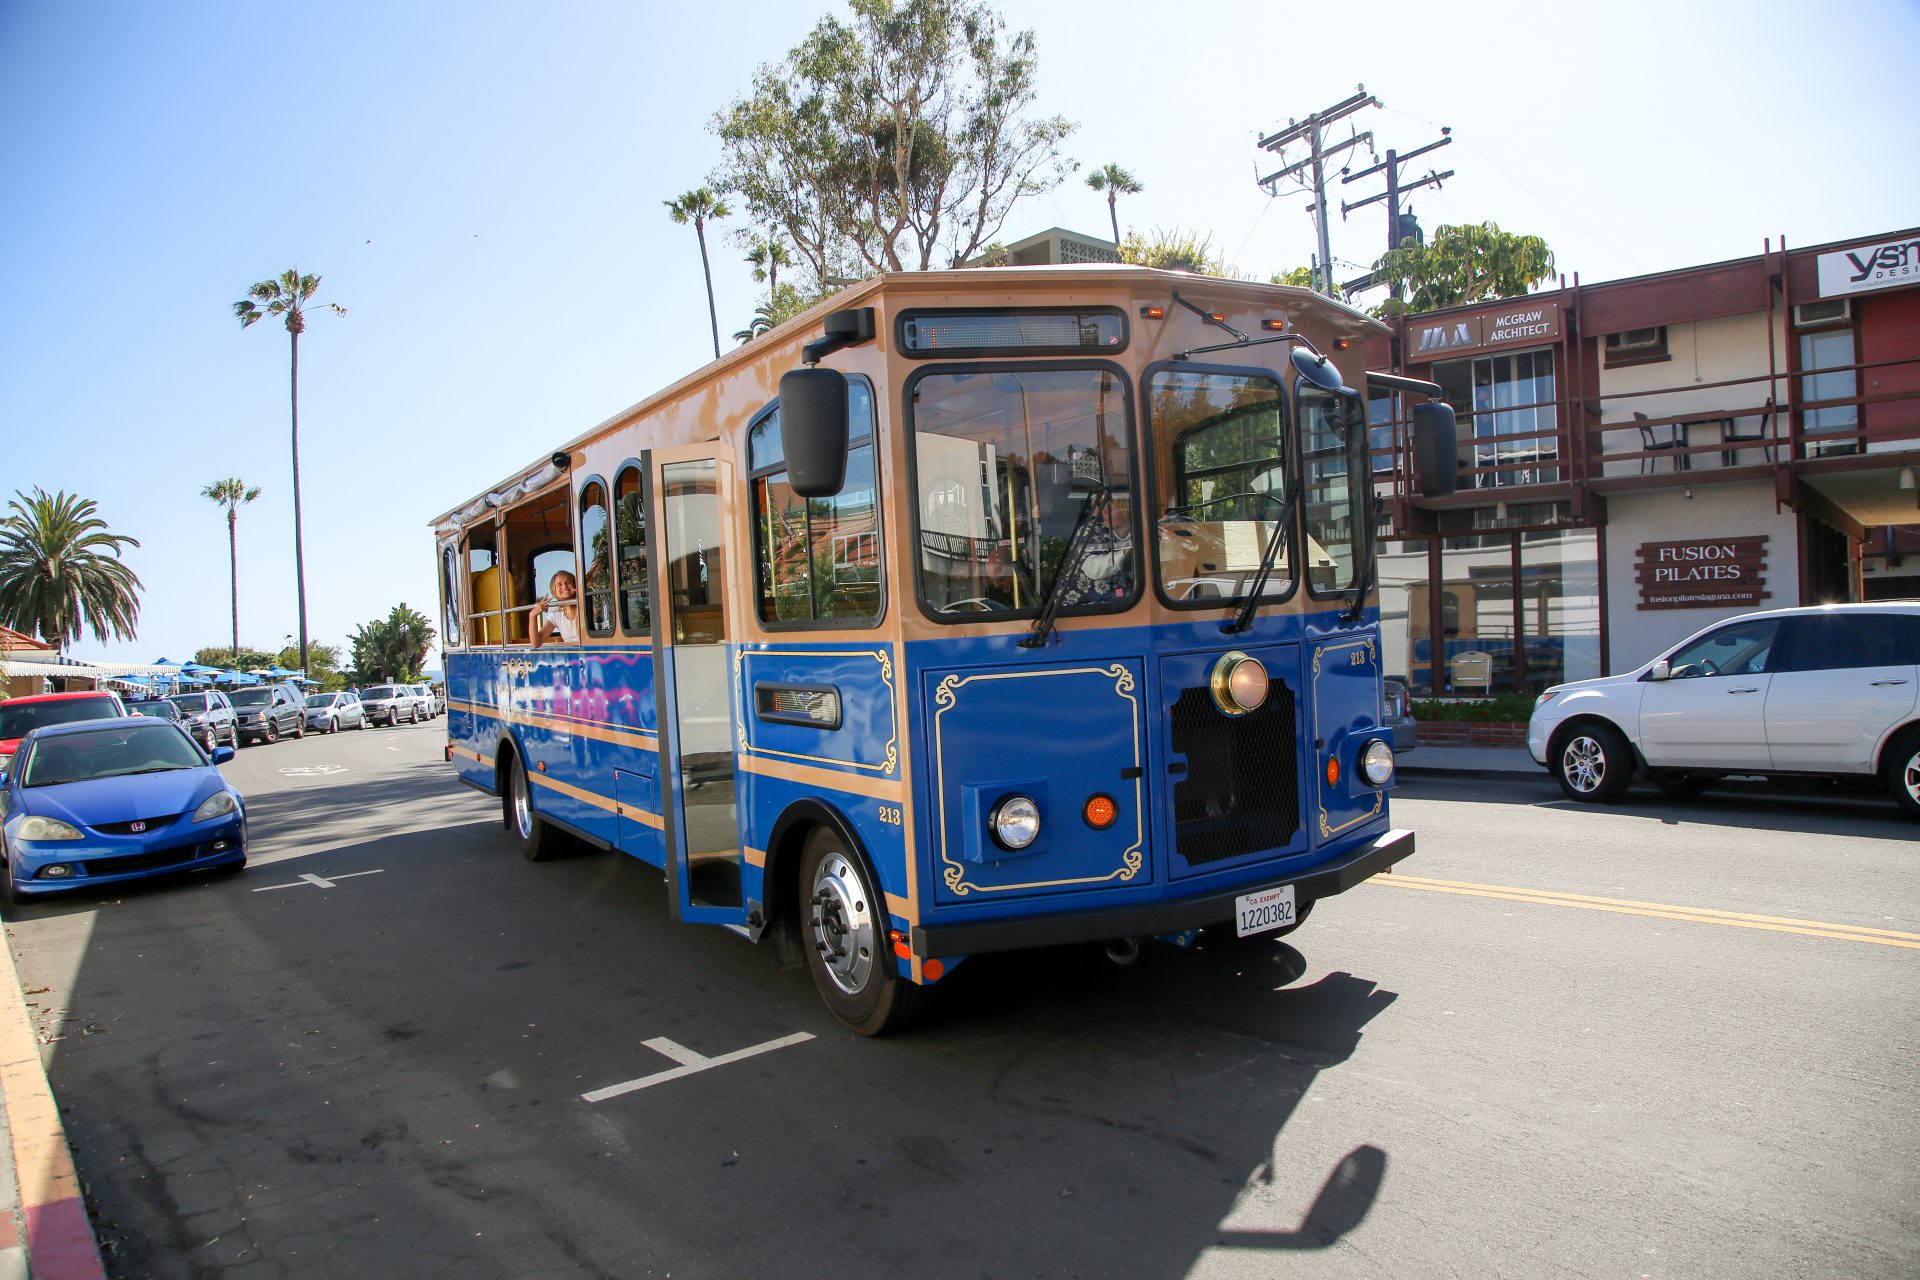 Laguna Beach trolleys are rolling again - Laguna Beach Local News